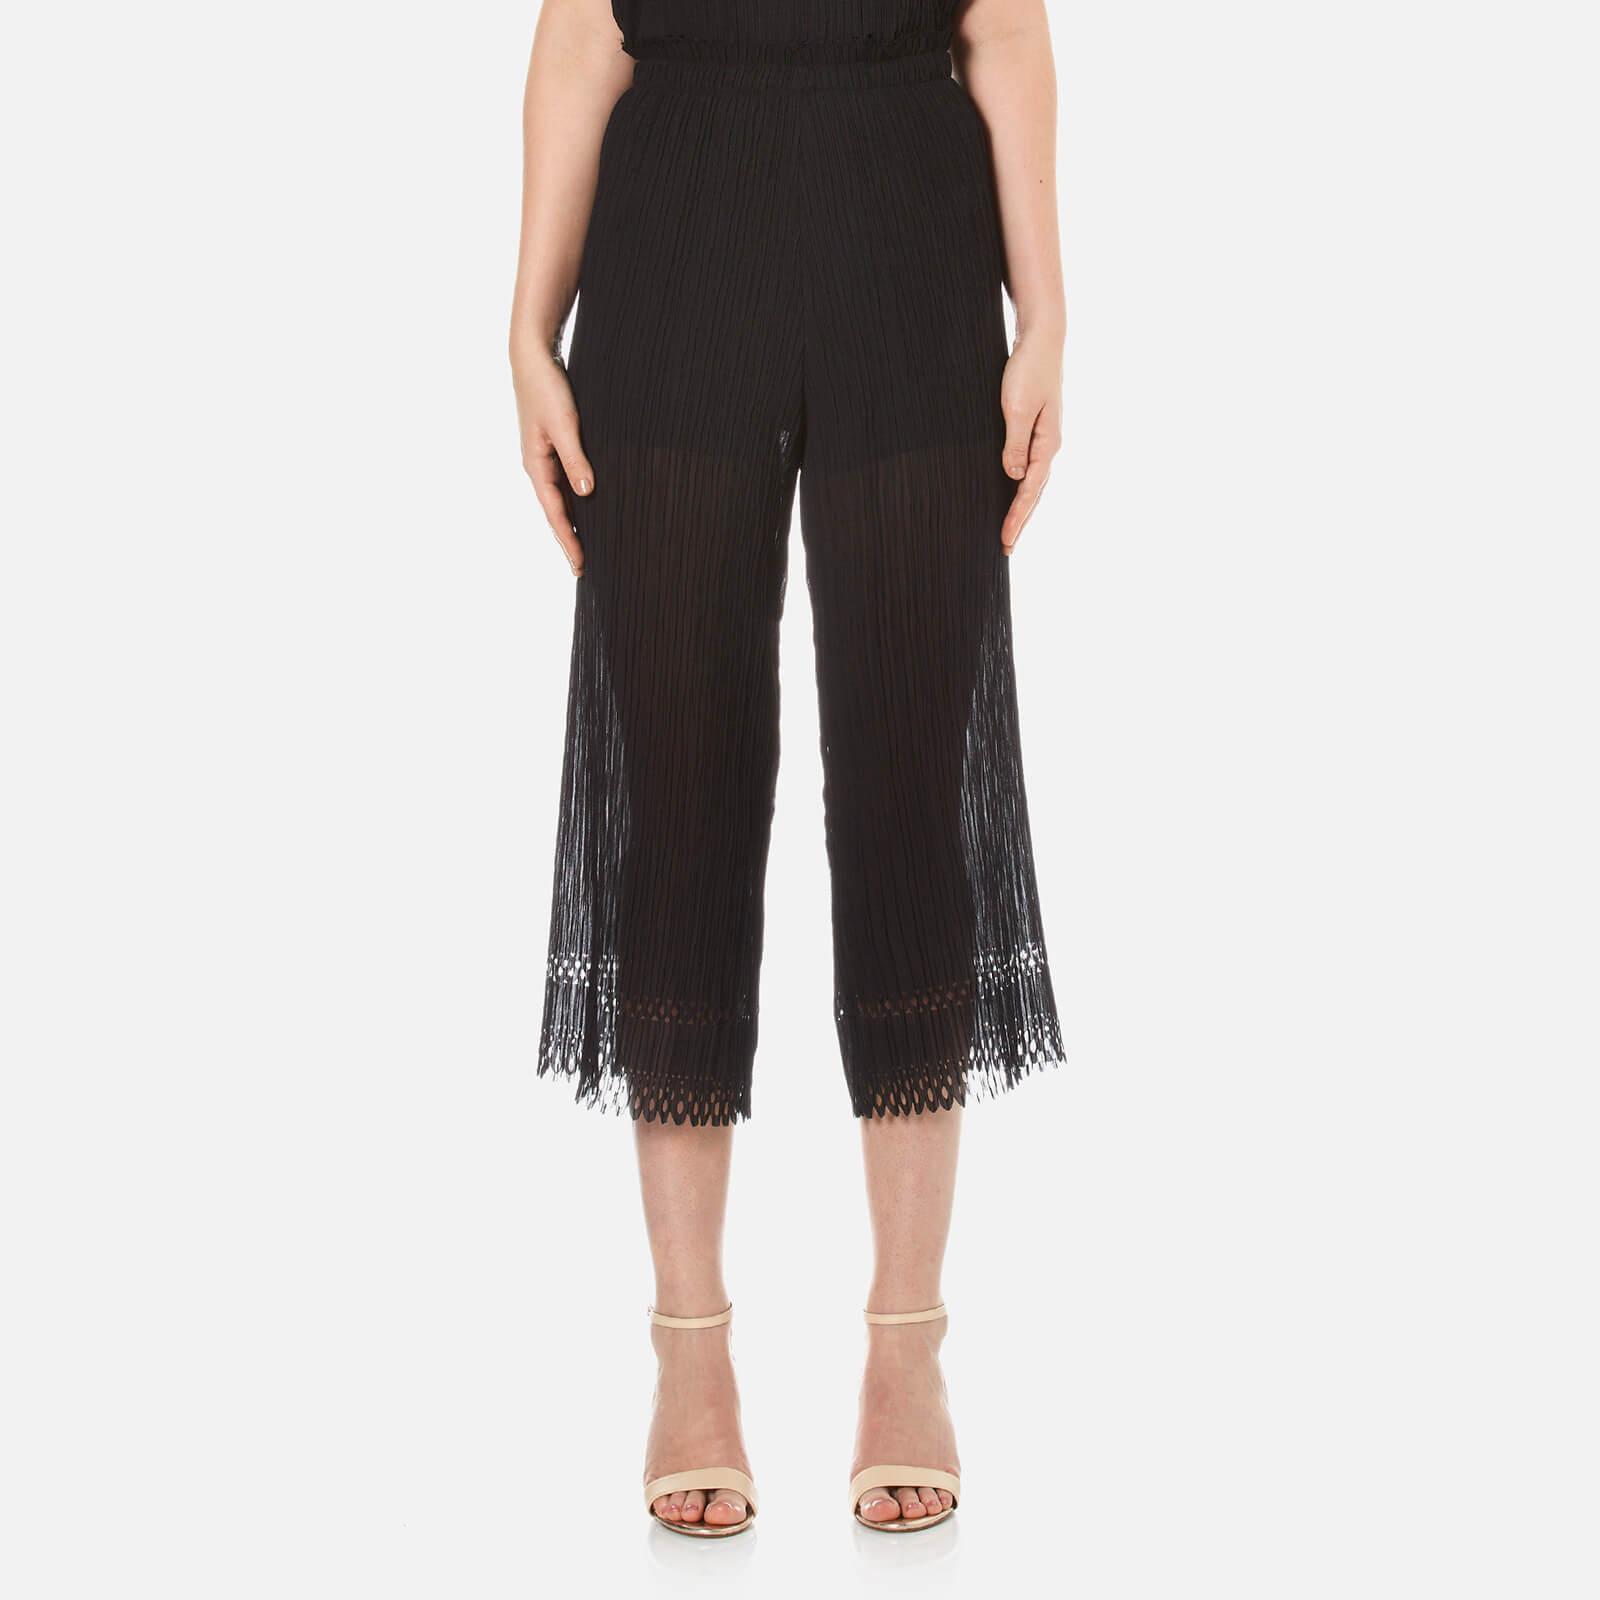 Lyst - Bec & Bridge Women's Lattice Shadow Pants in Black